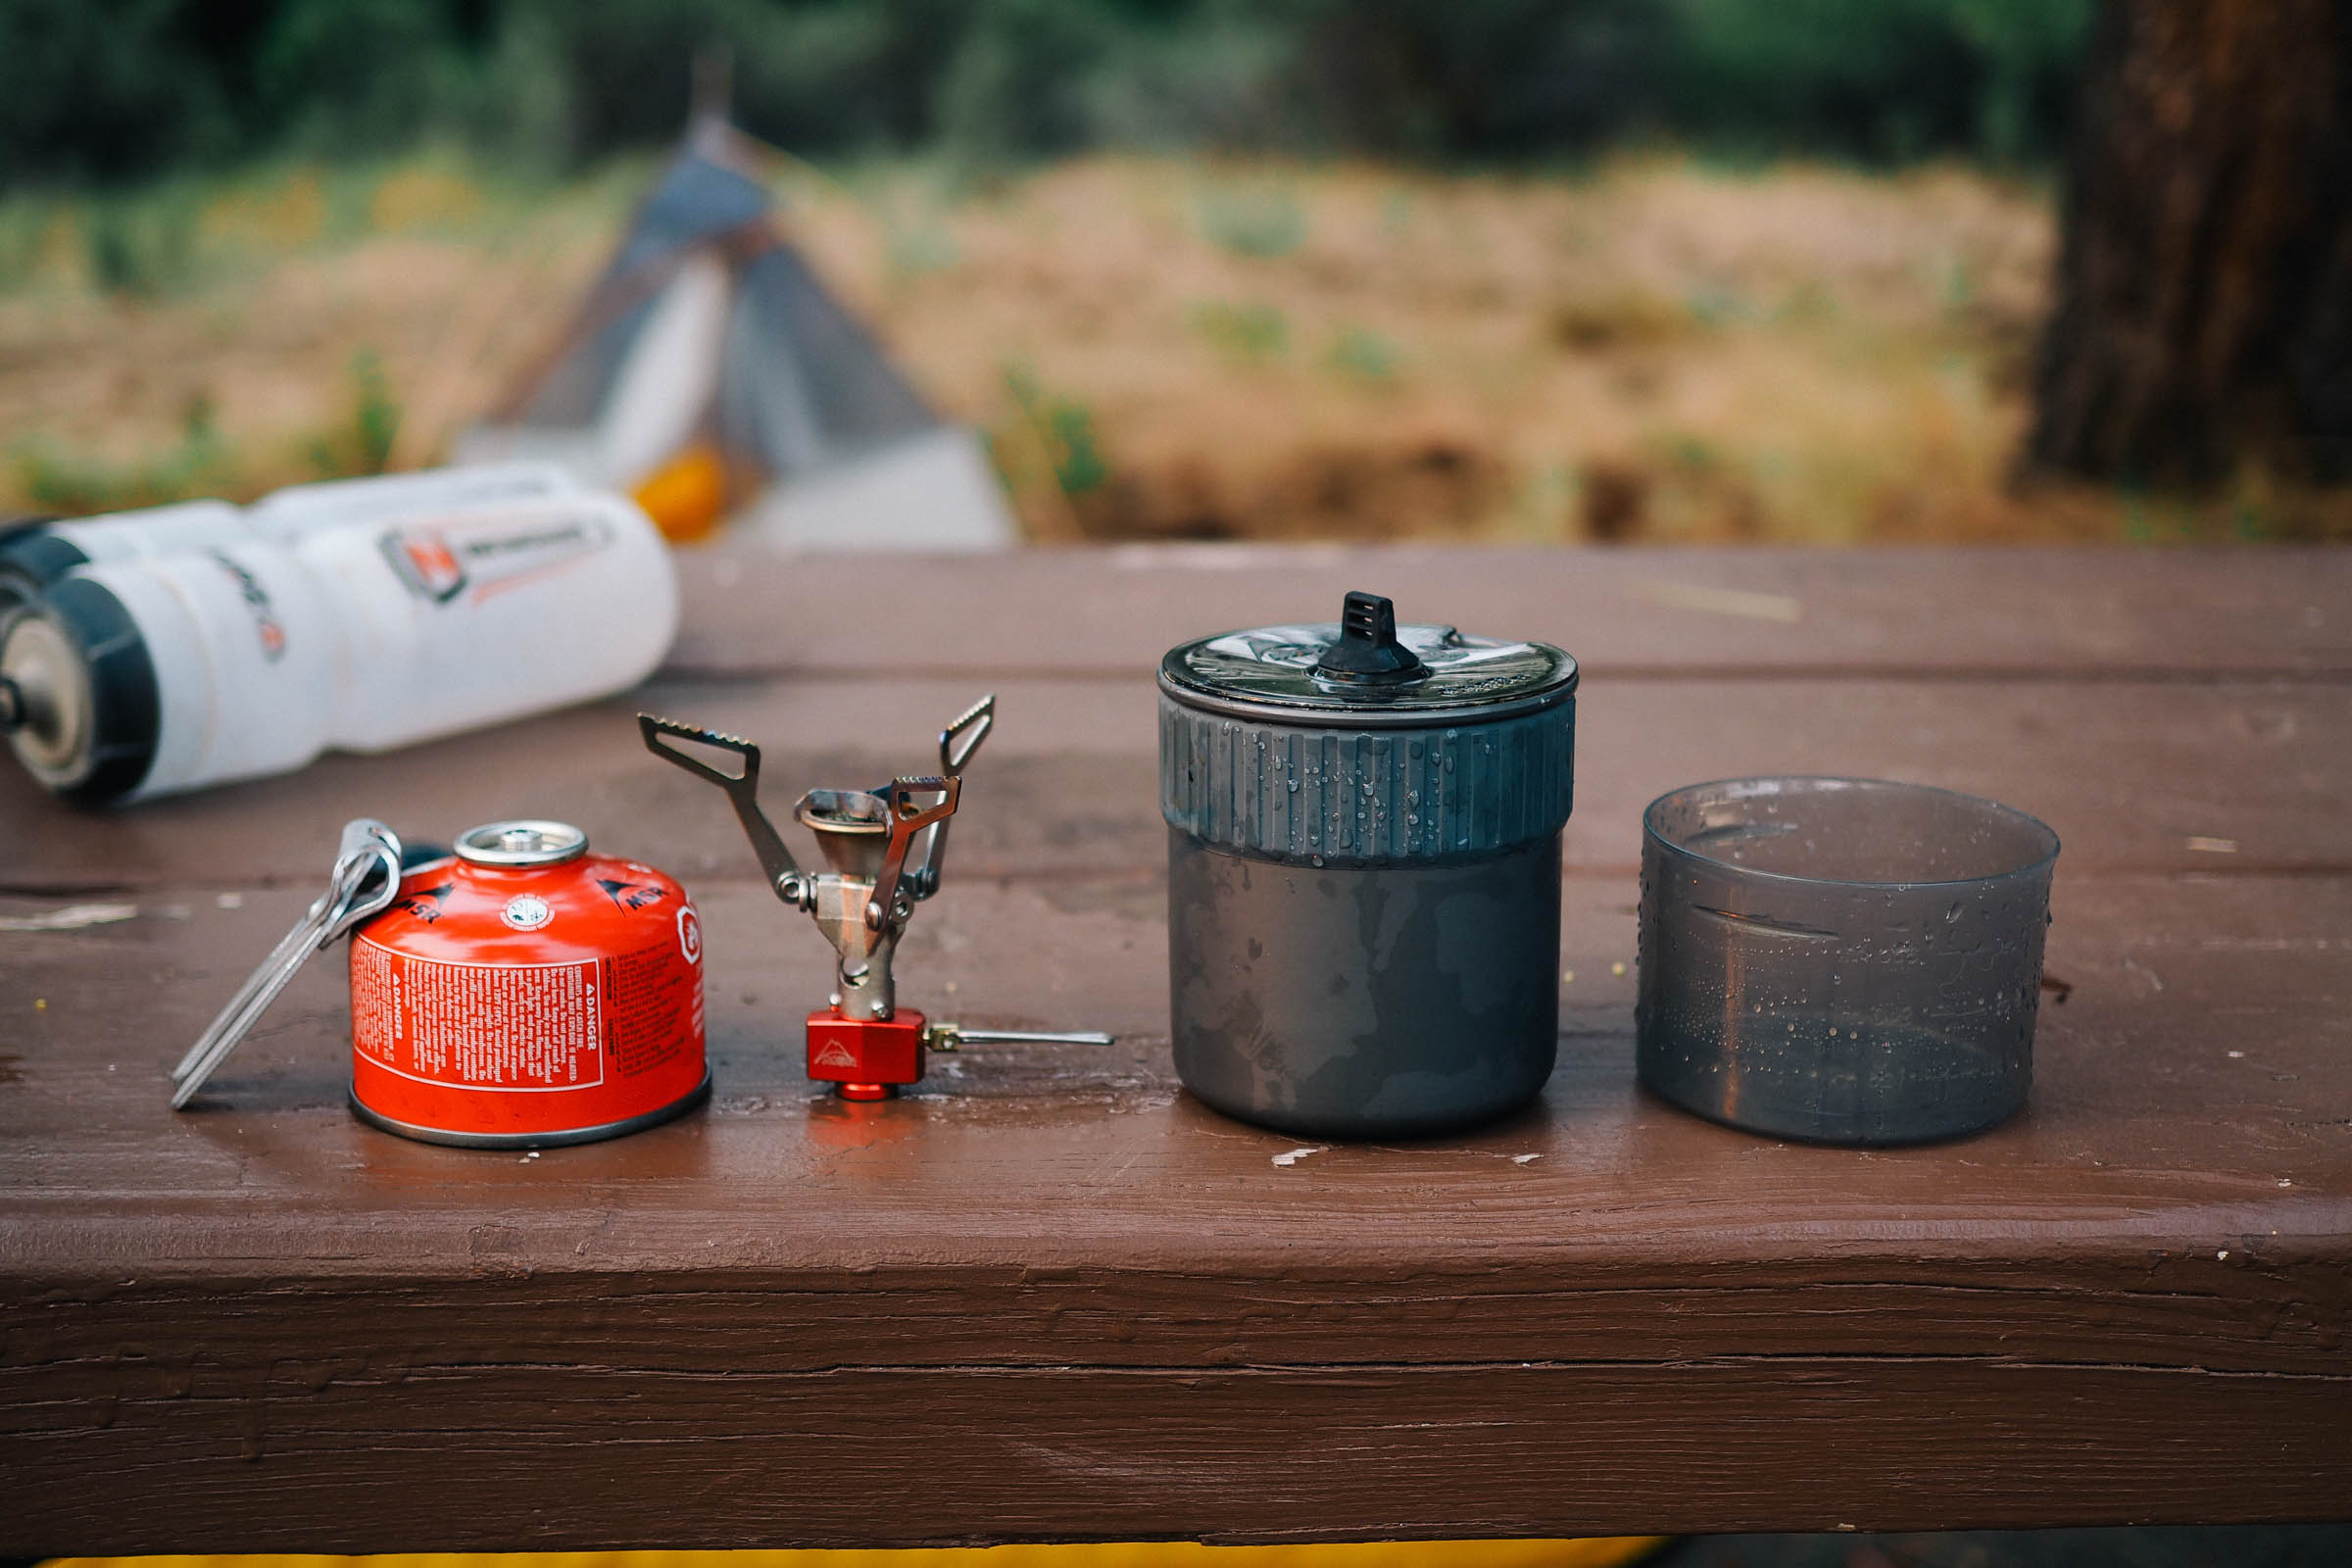 Msr PocketRocket 2 Mini Stove Kit 2019 Camping Stove 